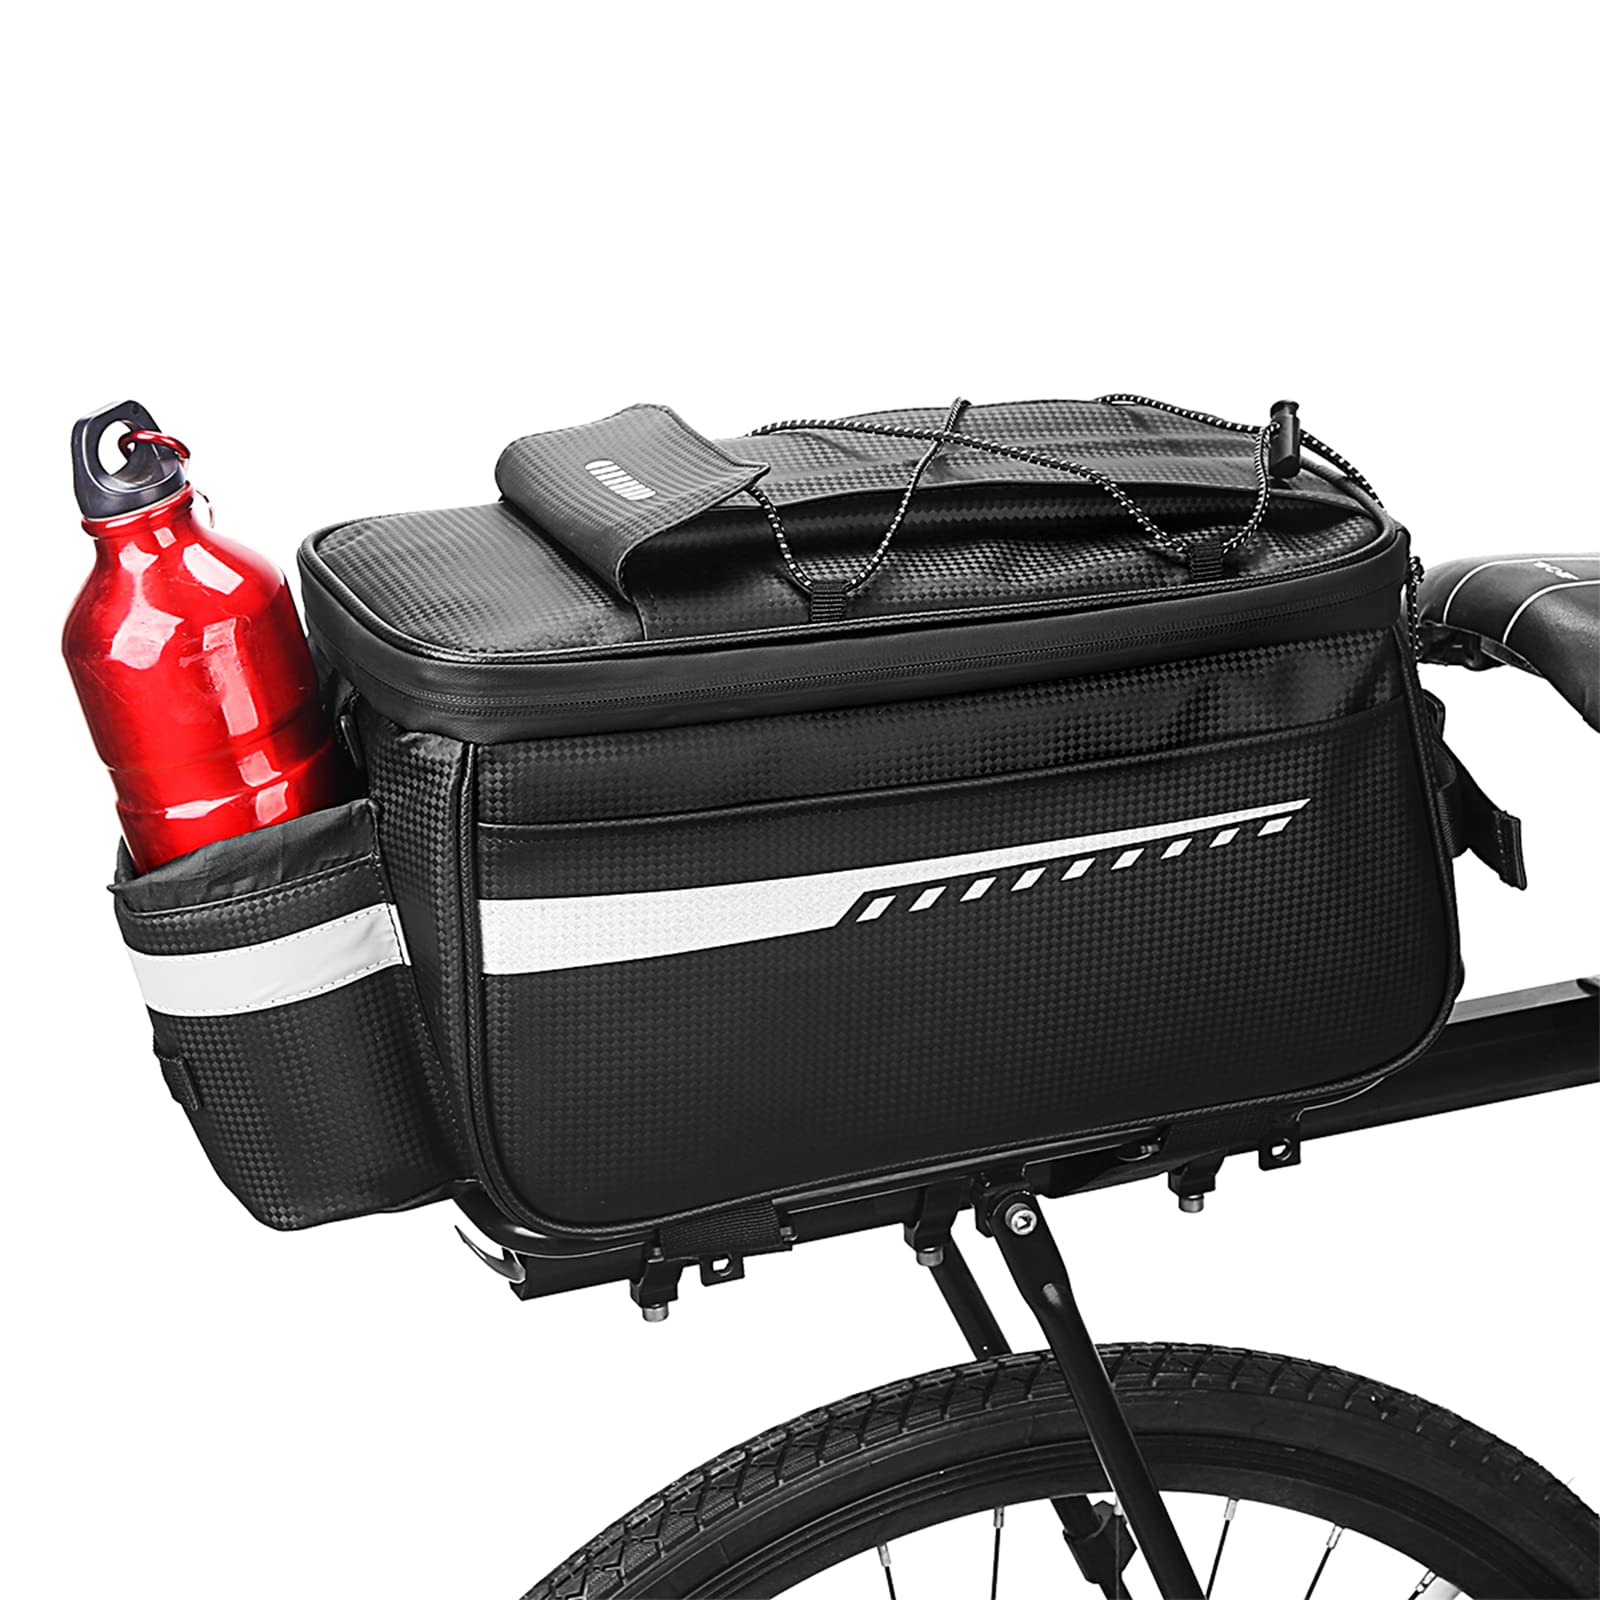 OKYUK Fahrrad Gepäckträgertasche, 8L multifunktionale Isoliertasche für Fahrrad, Stammkühltasche zur Isolierung von Lebensmitteln und Getränken, Satteltaschen für Fahrrad von OKYUK